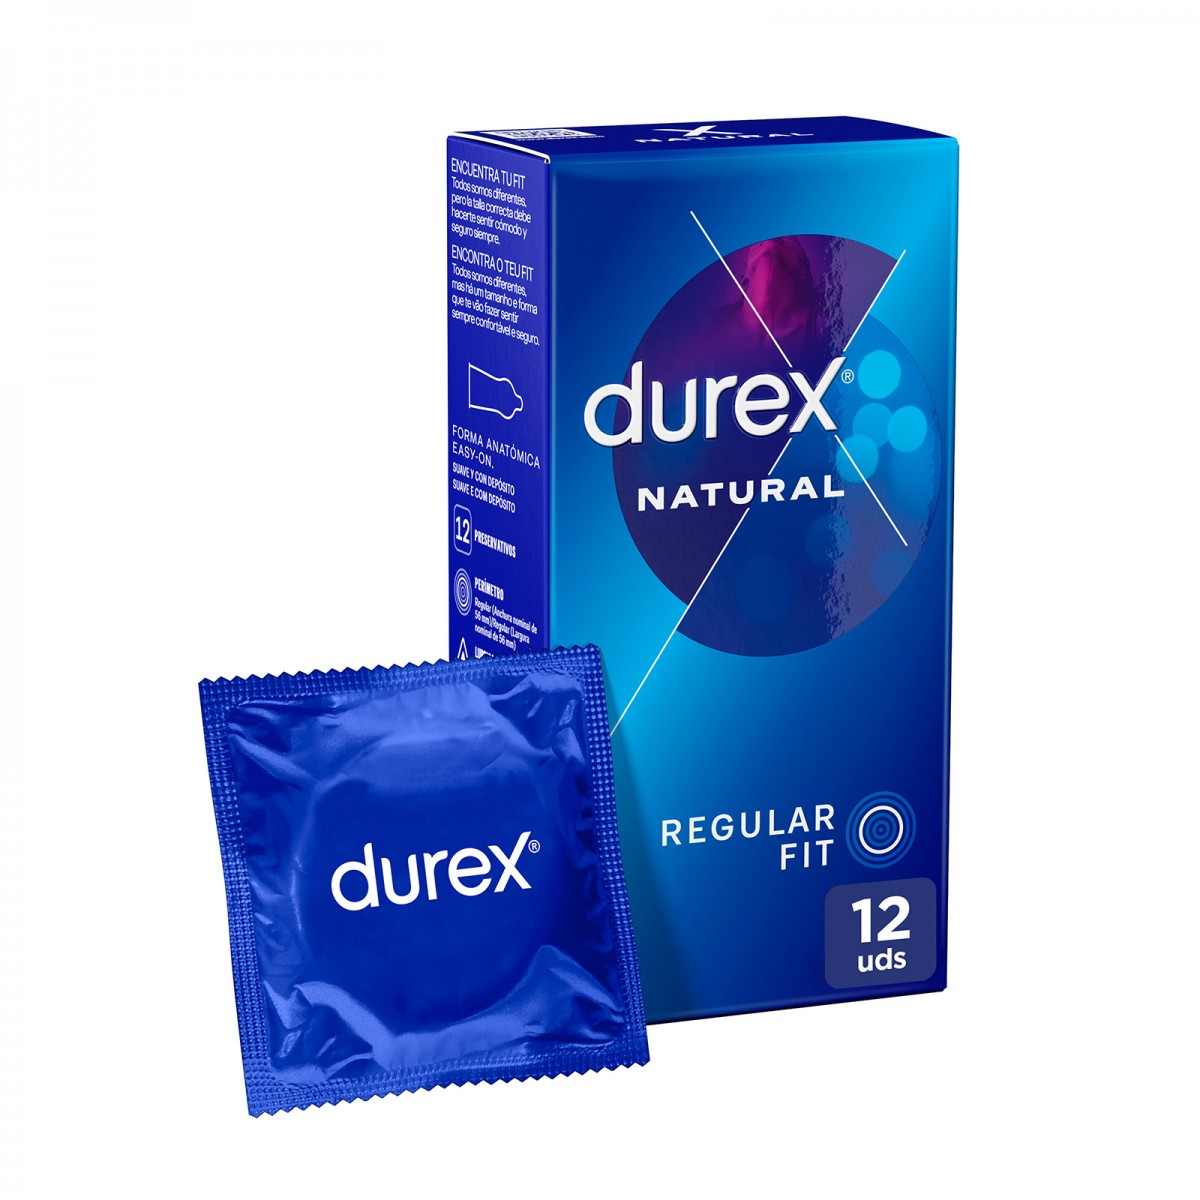 Durex - Durex - Preservativos Natural, el clásico de durex, para Mayor Sensación Packs 12-24-48 condones para un sexo seguro